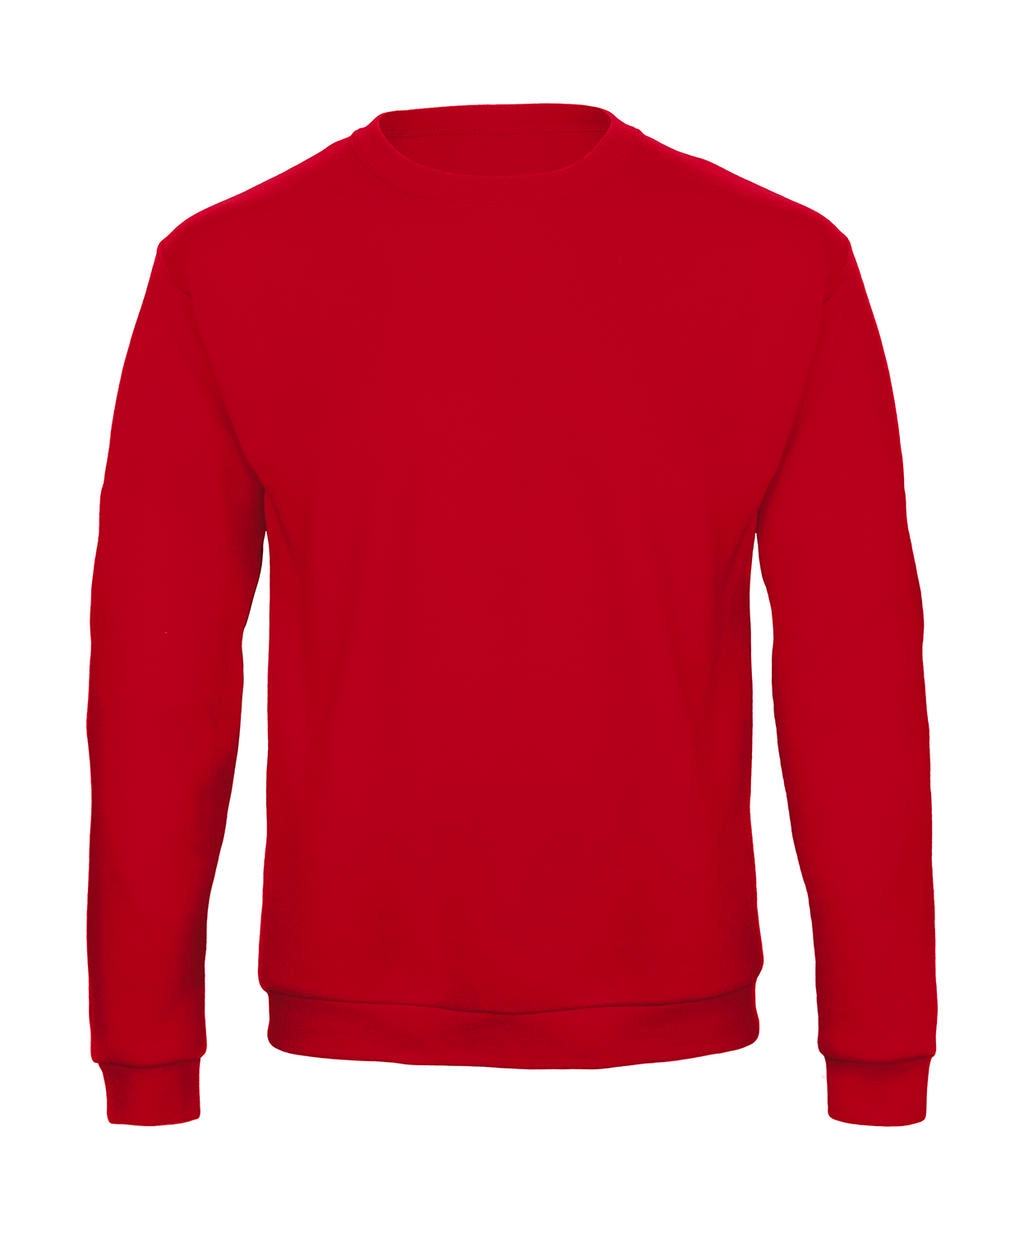 ID.202 50/50 Sweatshirt Unisex zum Besticken und Bedrucken in der Farbe Red mit Ihren Logo, Schriftzug oder Motiv.